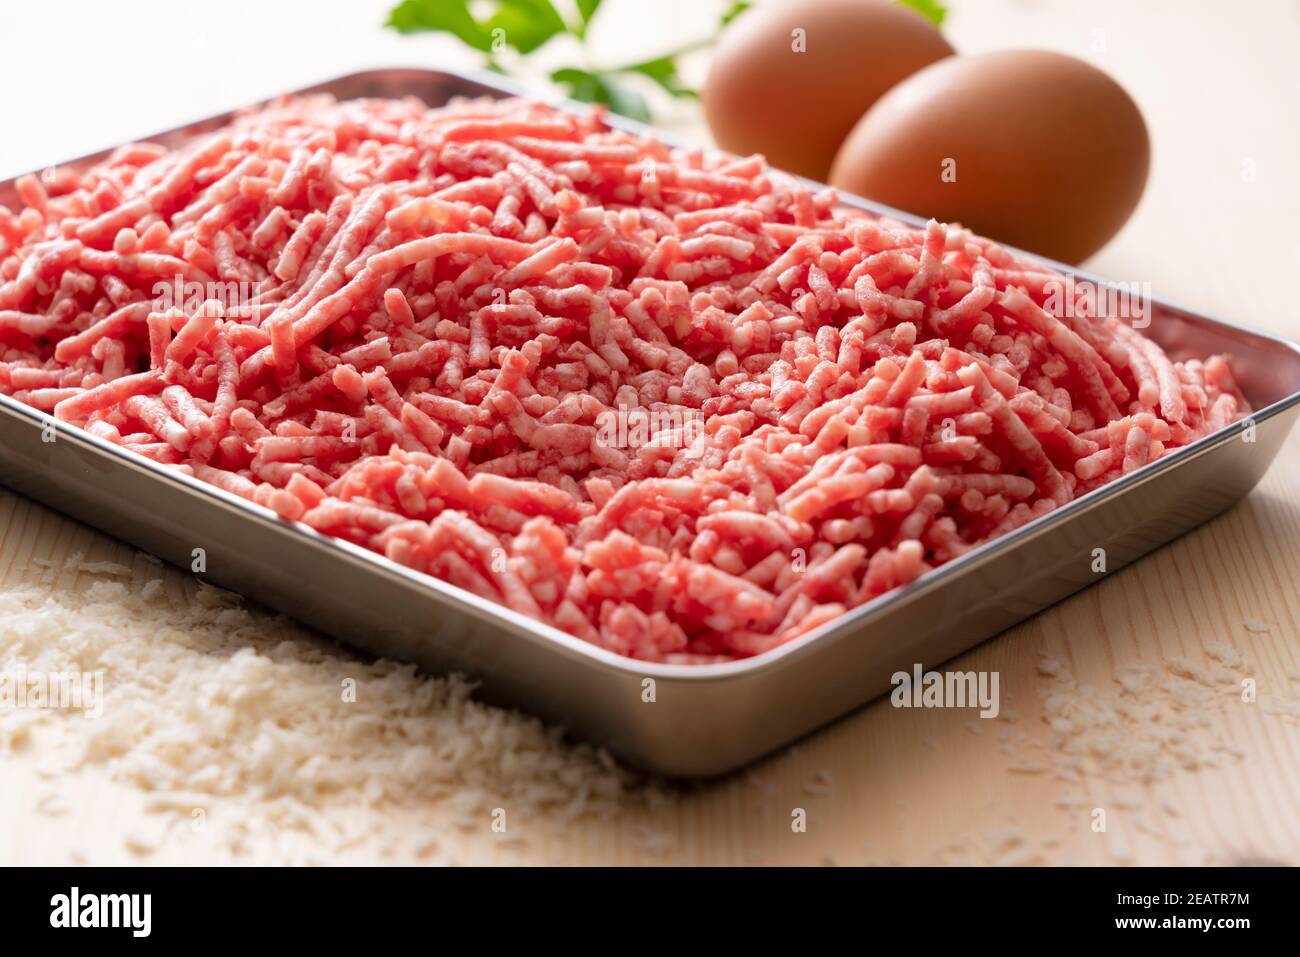 Hackfleisch und Eier in einem Tablett auf einem hölzernen Hintergrund Stockfoto